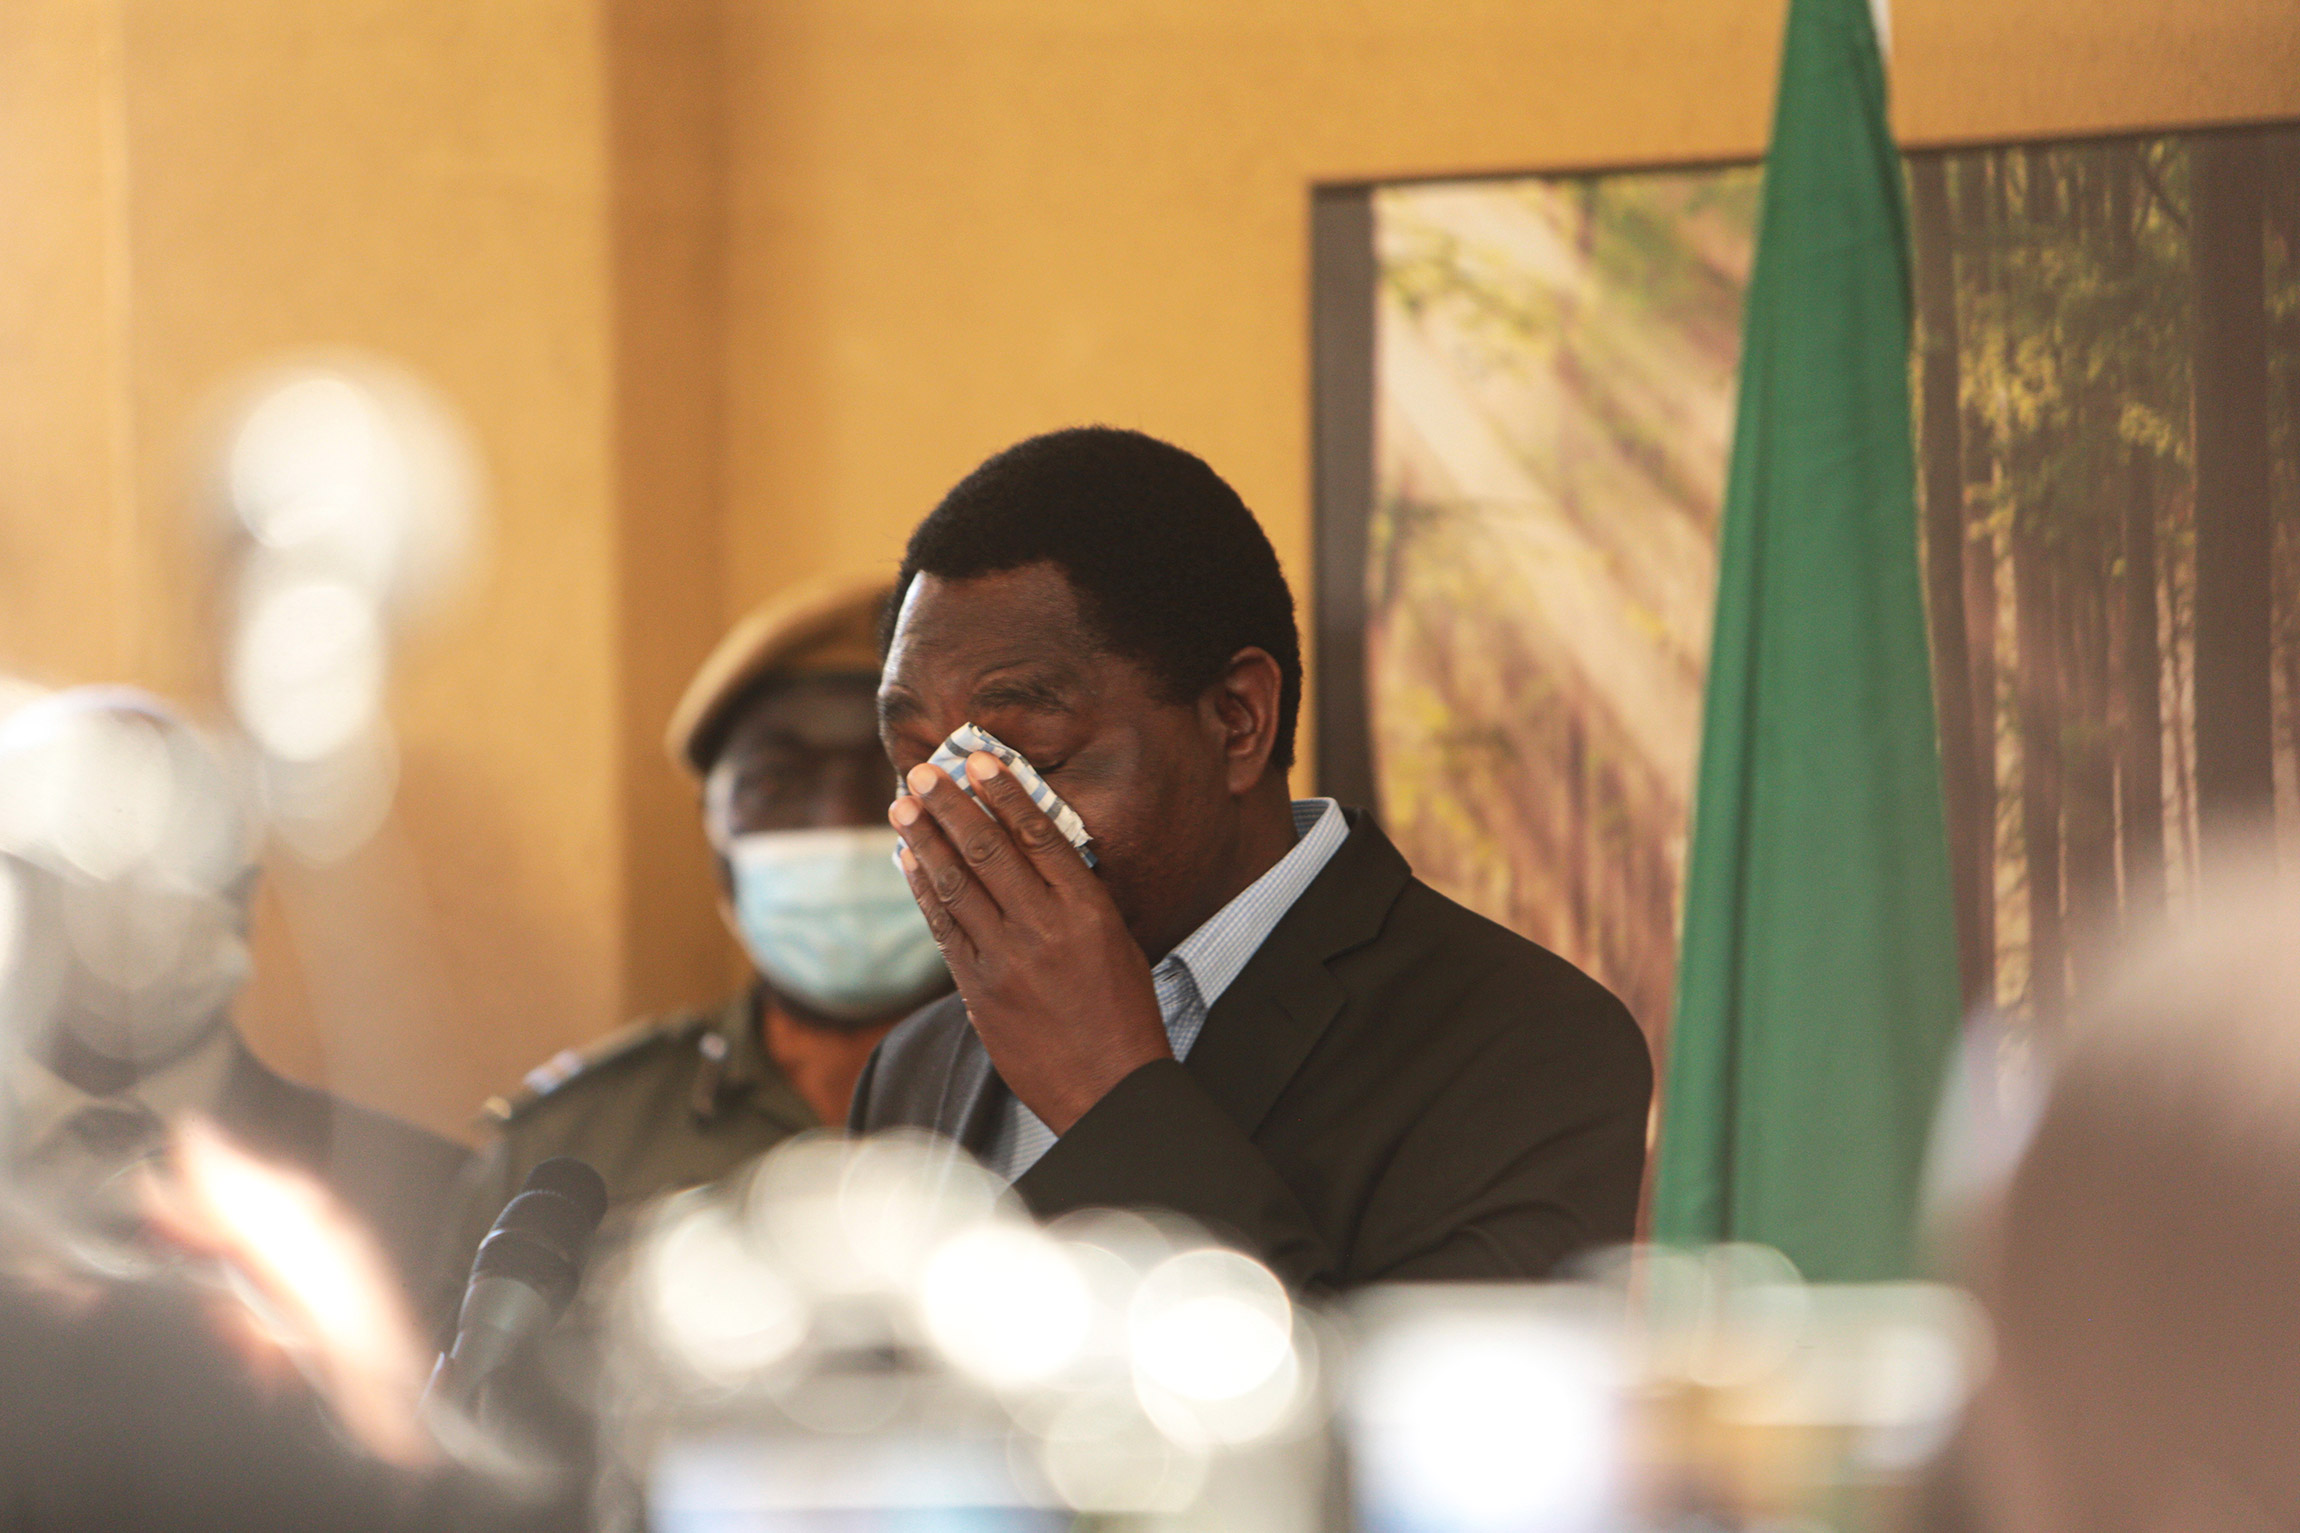 Избранный президент Замбии Хакаинде Хичилема на пресс-конференции после победы на выборах. 16 августа, Лусака.

До этого Хичилема пять раз выдвигал свою кандидатуру на пост главы государства